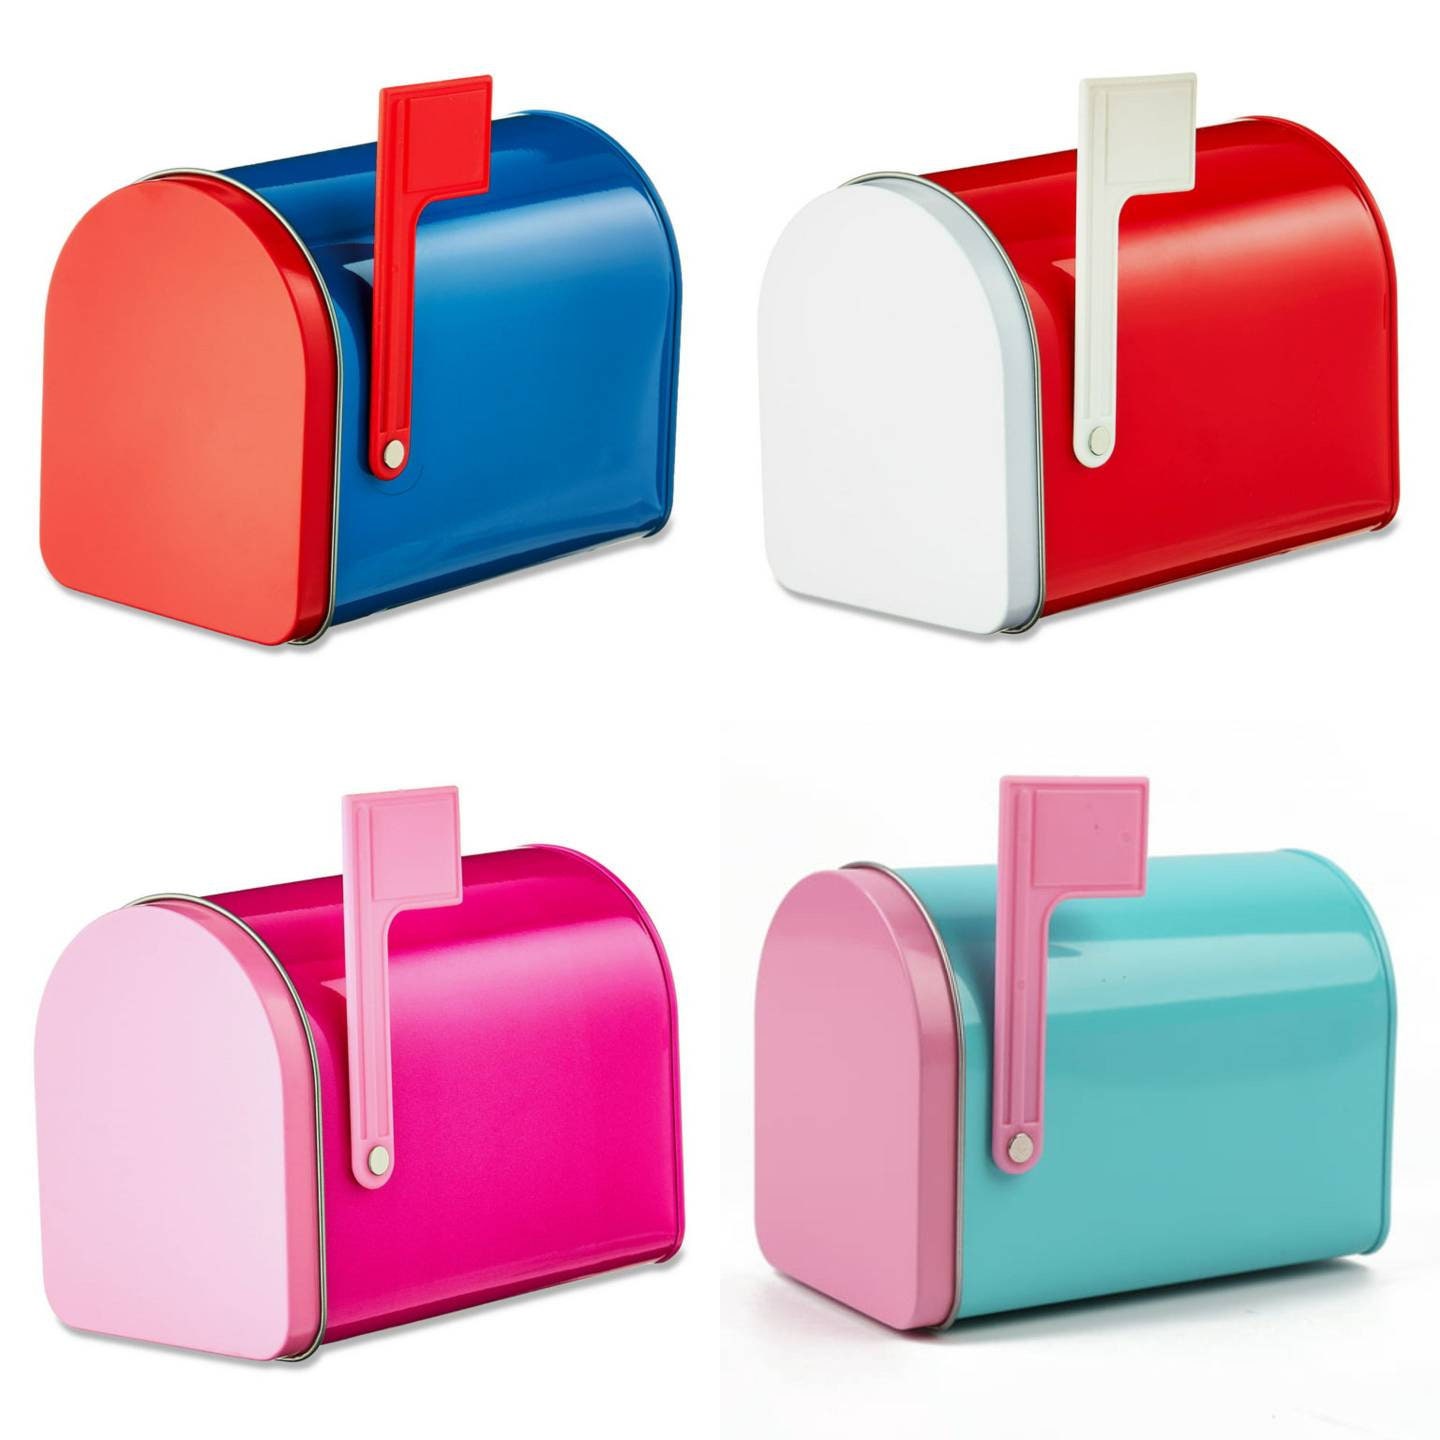 25 ideas de Buzon de correo  buzones de correo, buzón, decoración de unas